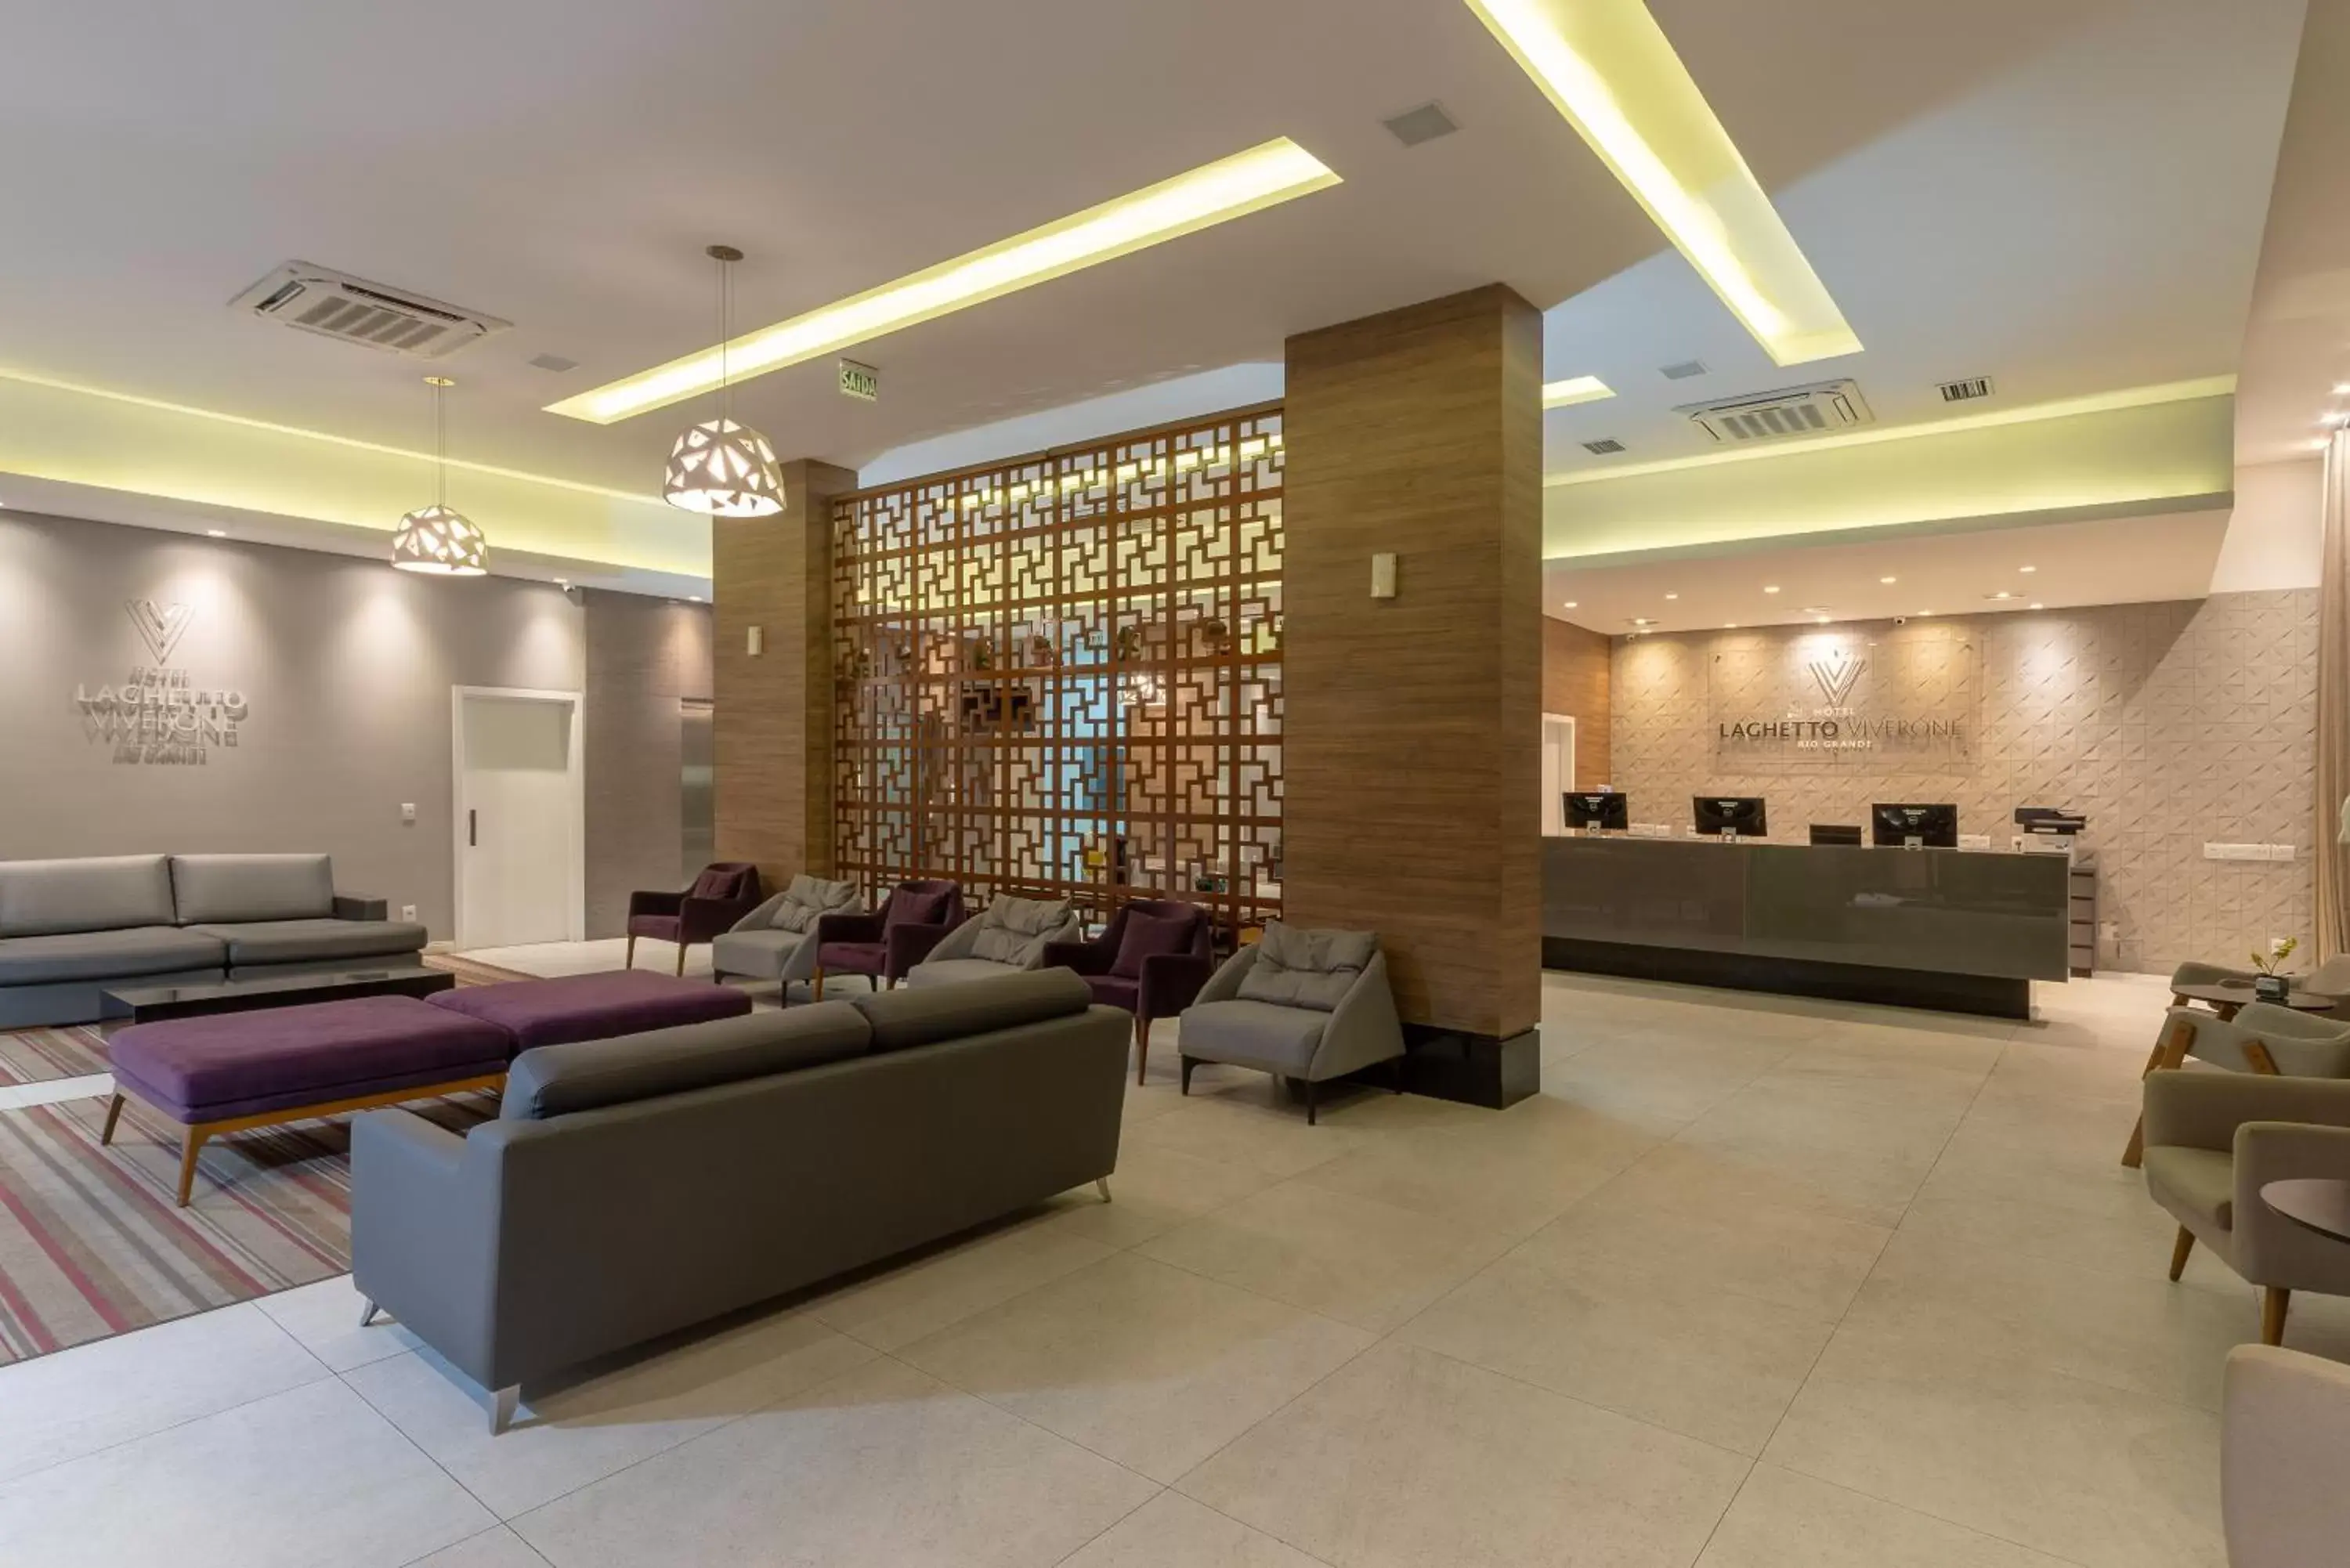 Lobby or reception, Lobby/Reception in Hotel Laghetto Rio Grande